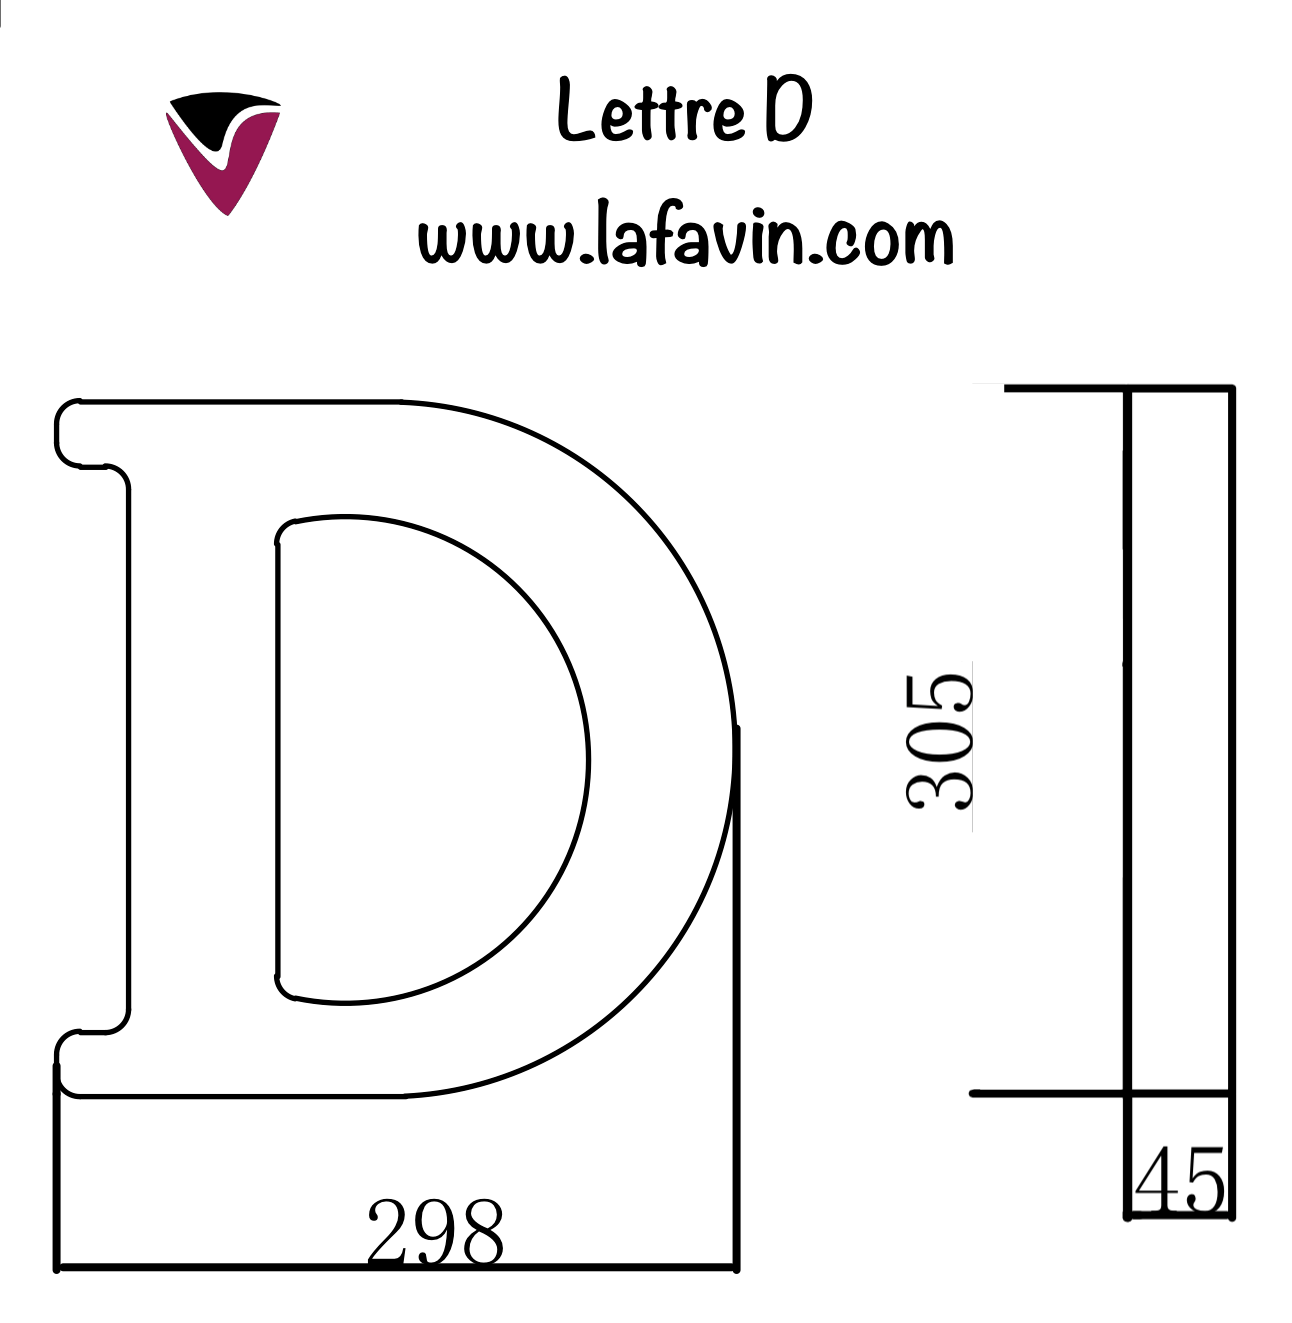 Lettre D Dimensions